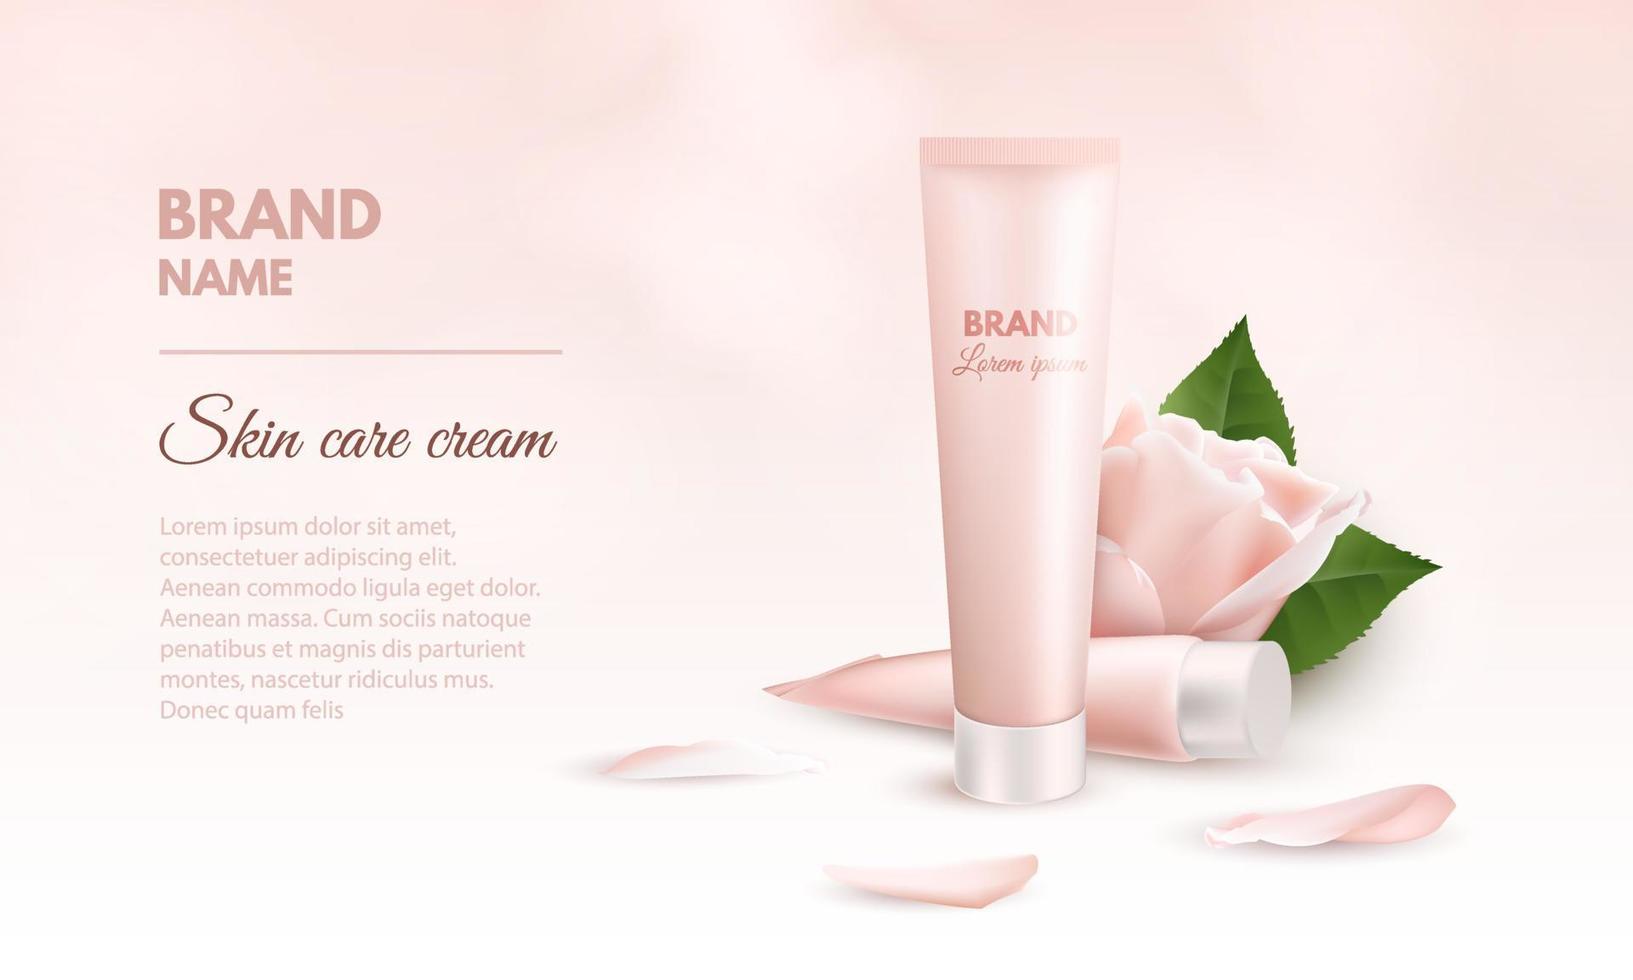 modello di banner 3d realistico per crema per la cura della pelle. mockup di packaging pubblicitario per prodotti cosmetici e medici con due tubi di crema, fiore e petali di rosa. illustrazione vettoriale